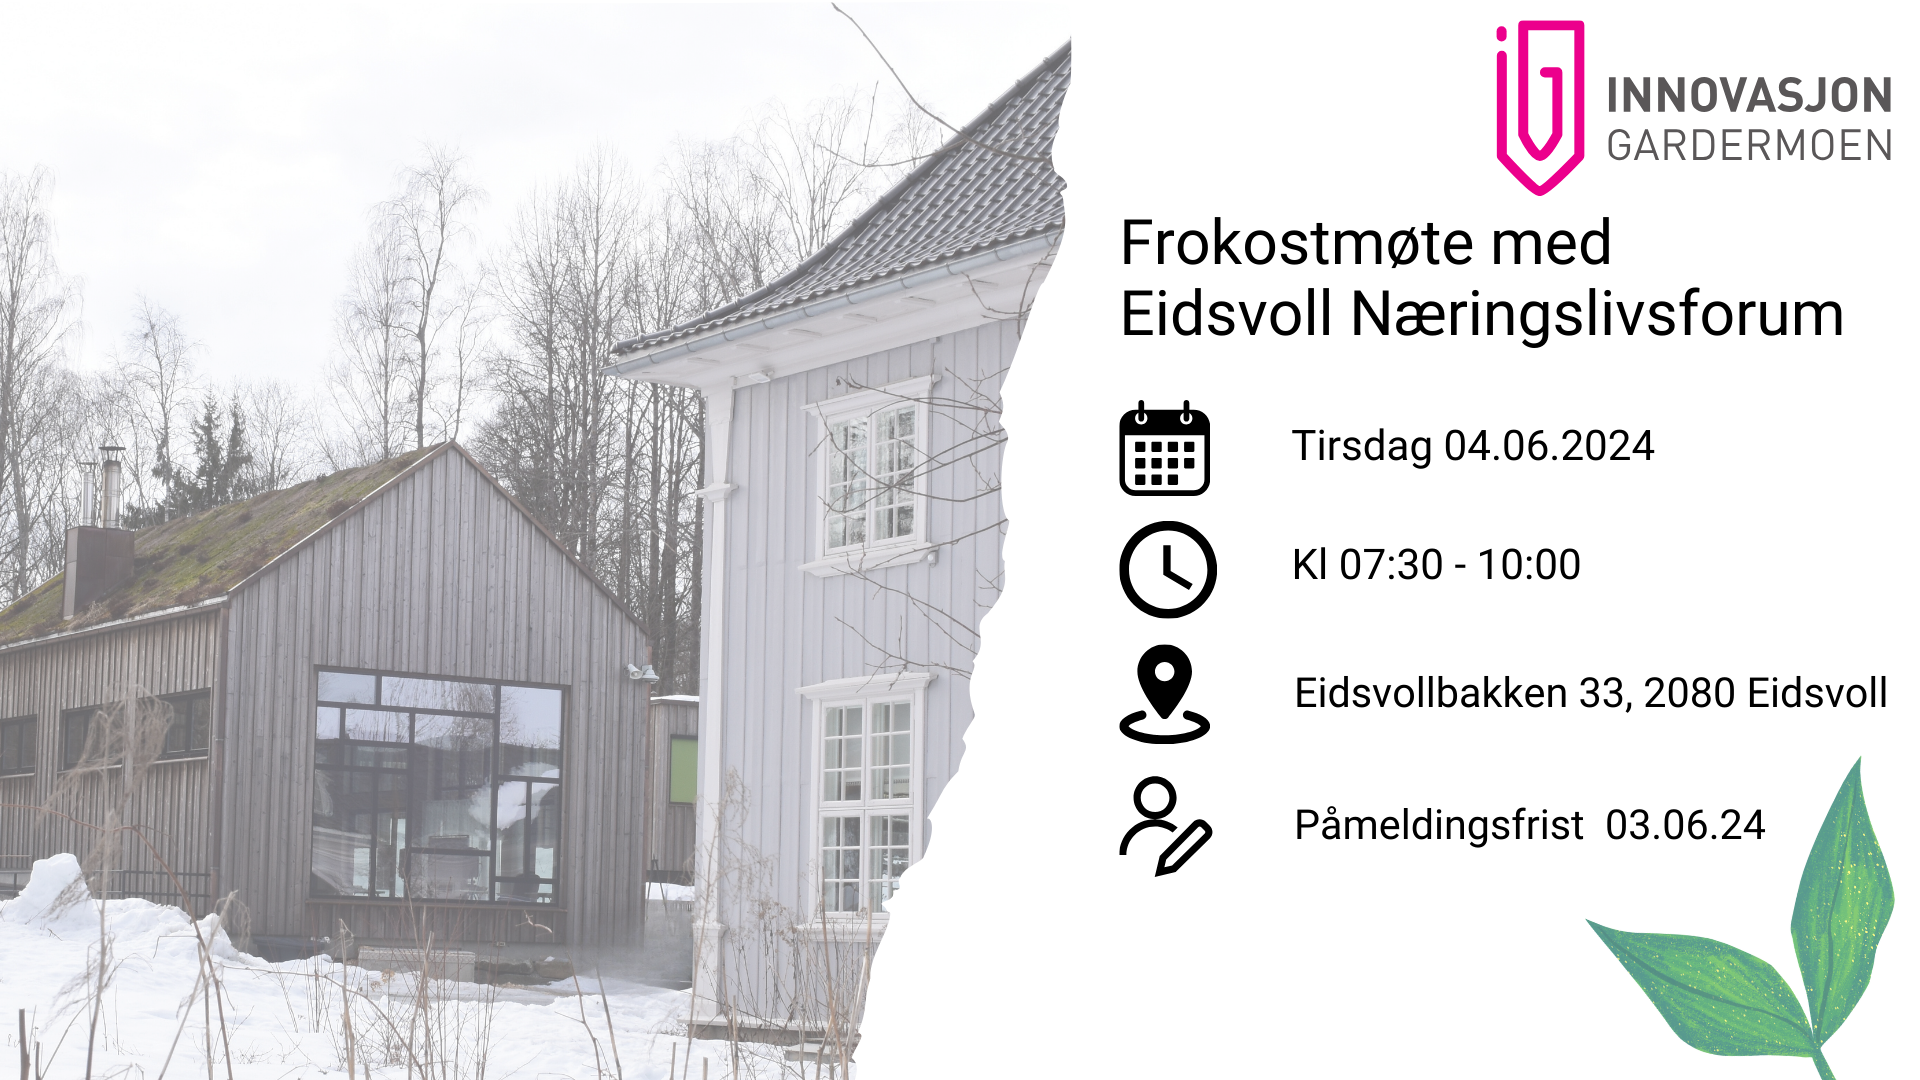 Frokostmøte med Eidsvoll Næringslivsforum